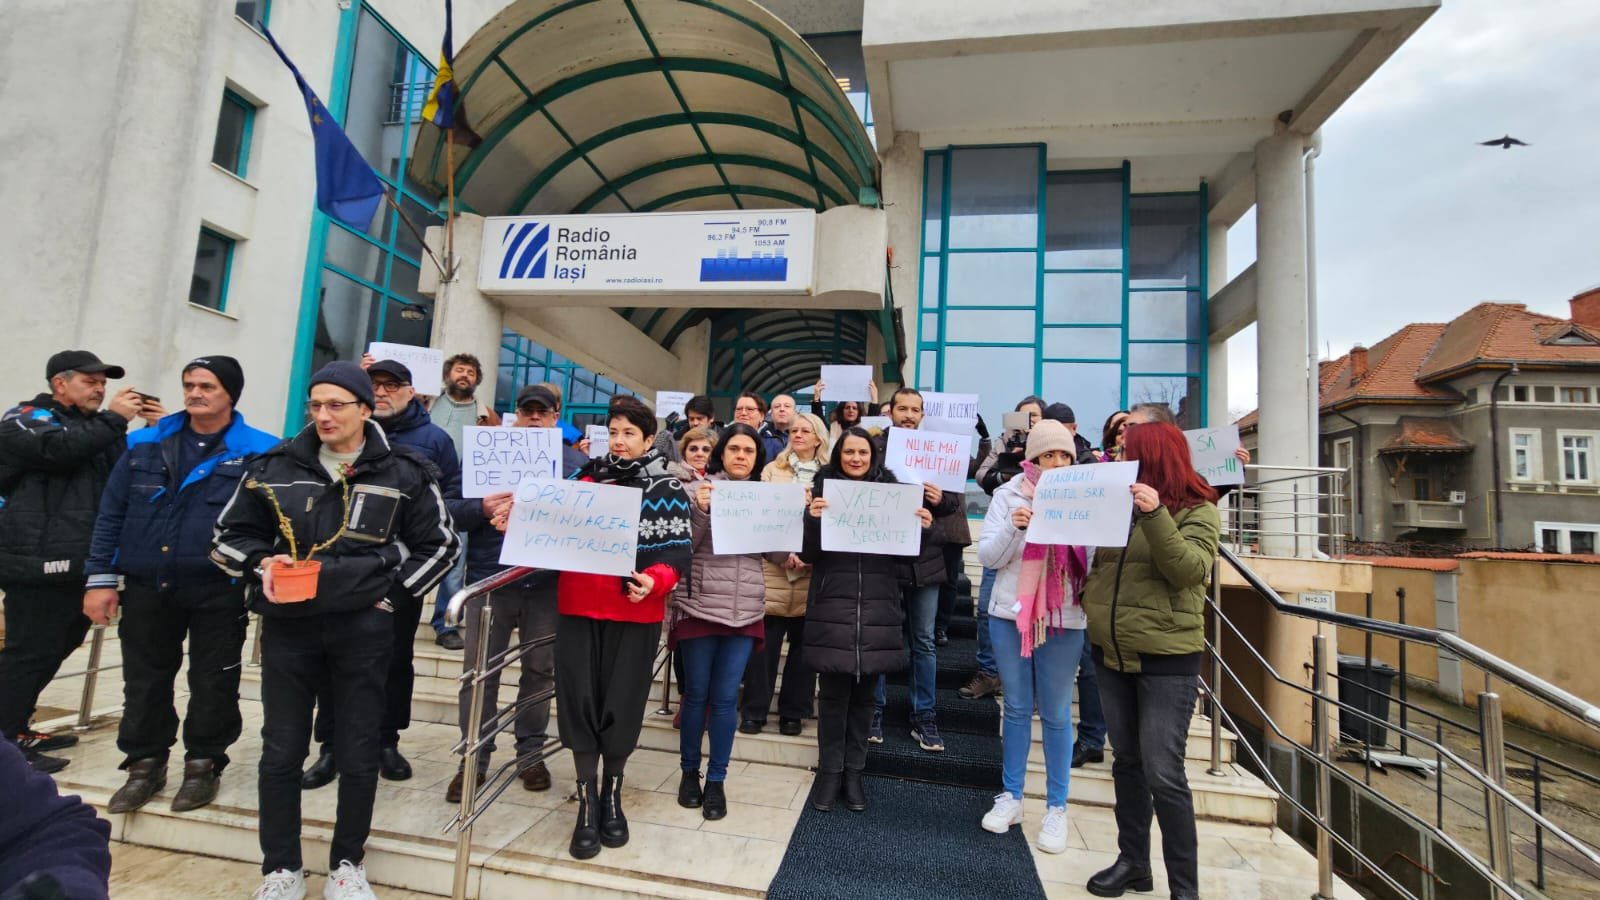  Protest spontan, astăzi, la Radio Iași. Nemulţumiri legate de salarii – FOTO